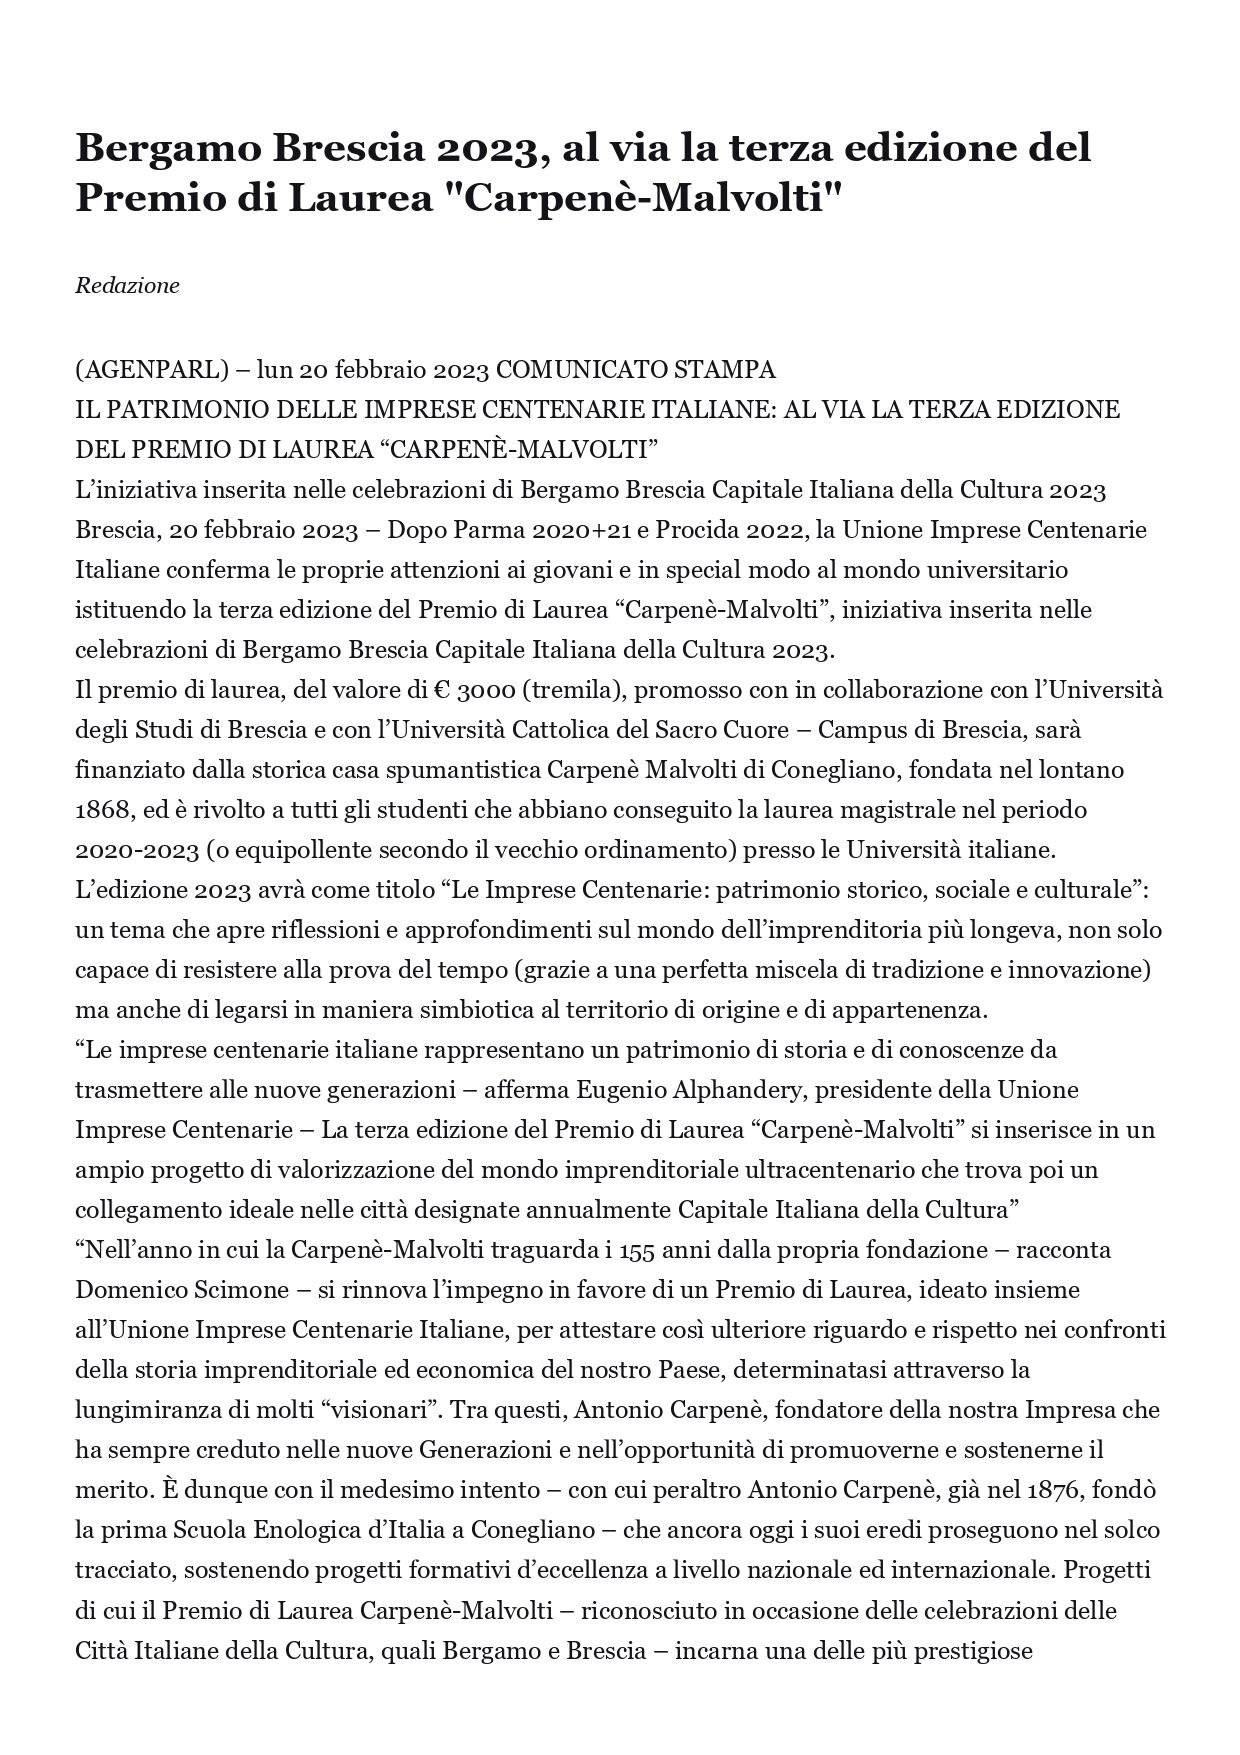 Agenparl Bergamo Brescia 2023 al via la terza edizione del Premio di Laurea Carpenè Malvolti 21 febbraio 2023 page 0001